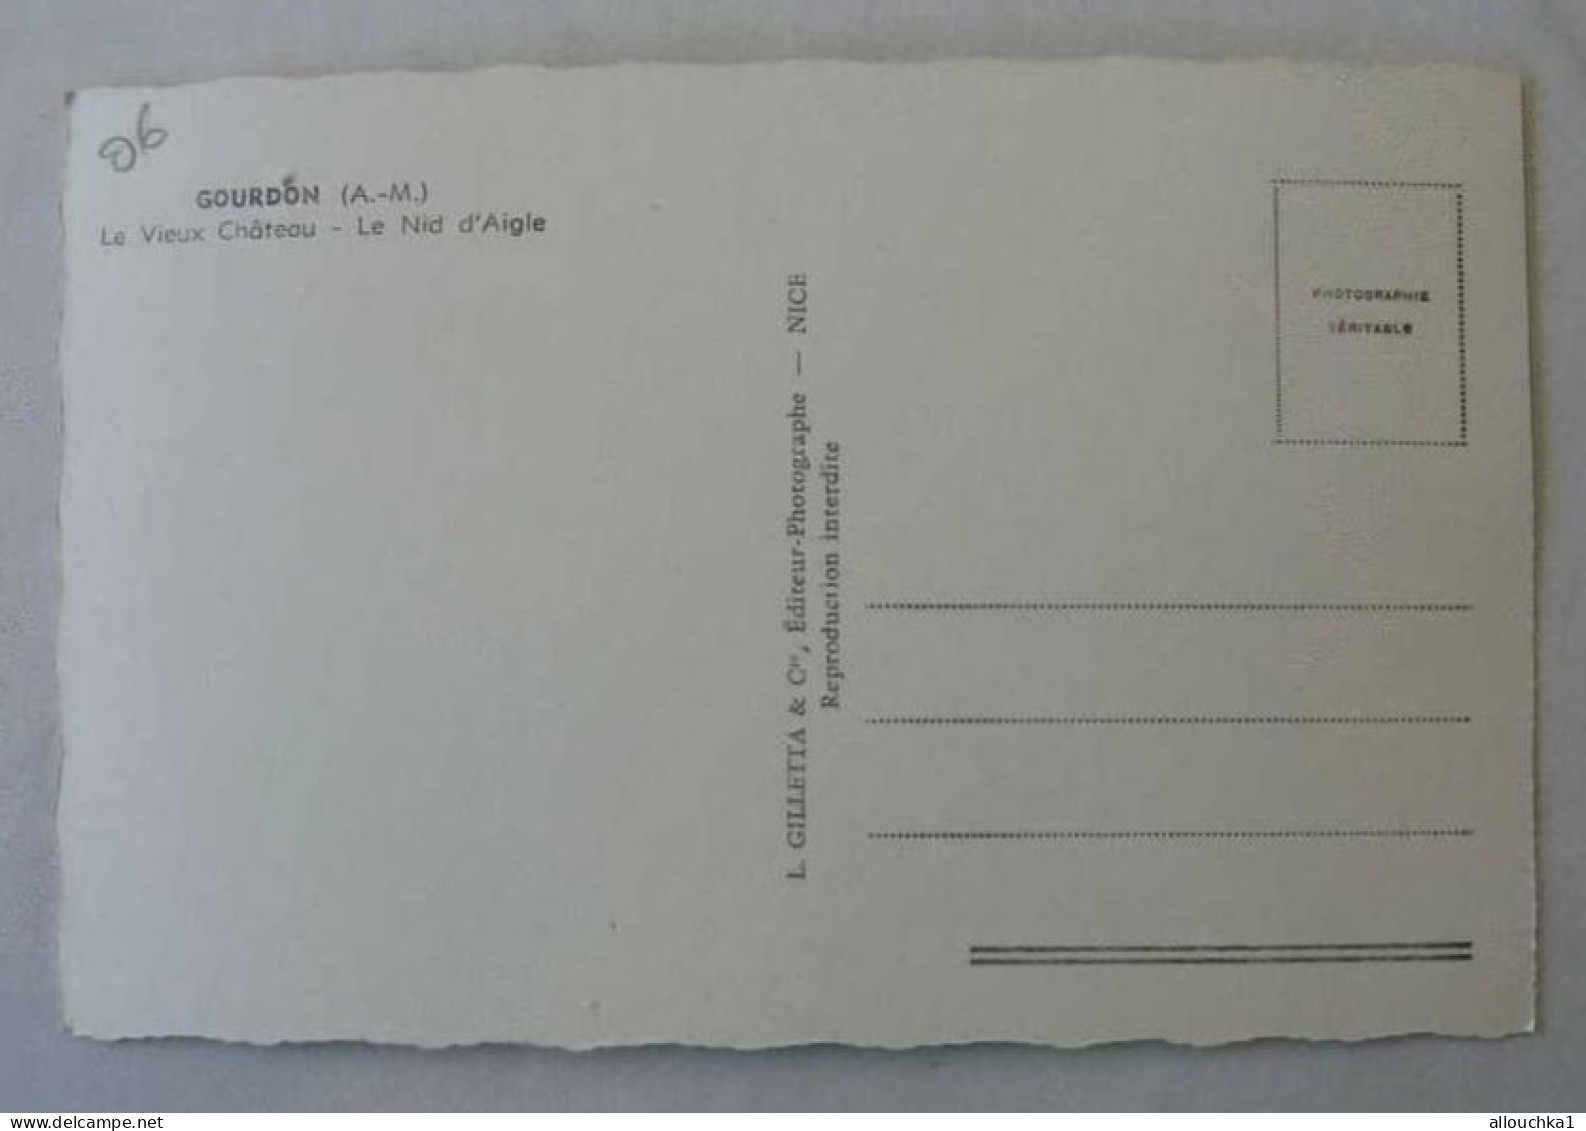 GOURDON LE VIEUX CHATEAU LE NID D'AIGLE  Carte Postale / Europe / France / [06] Alpes Maritimes / Gourdon-CPSM - Gourdon